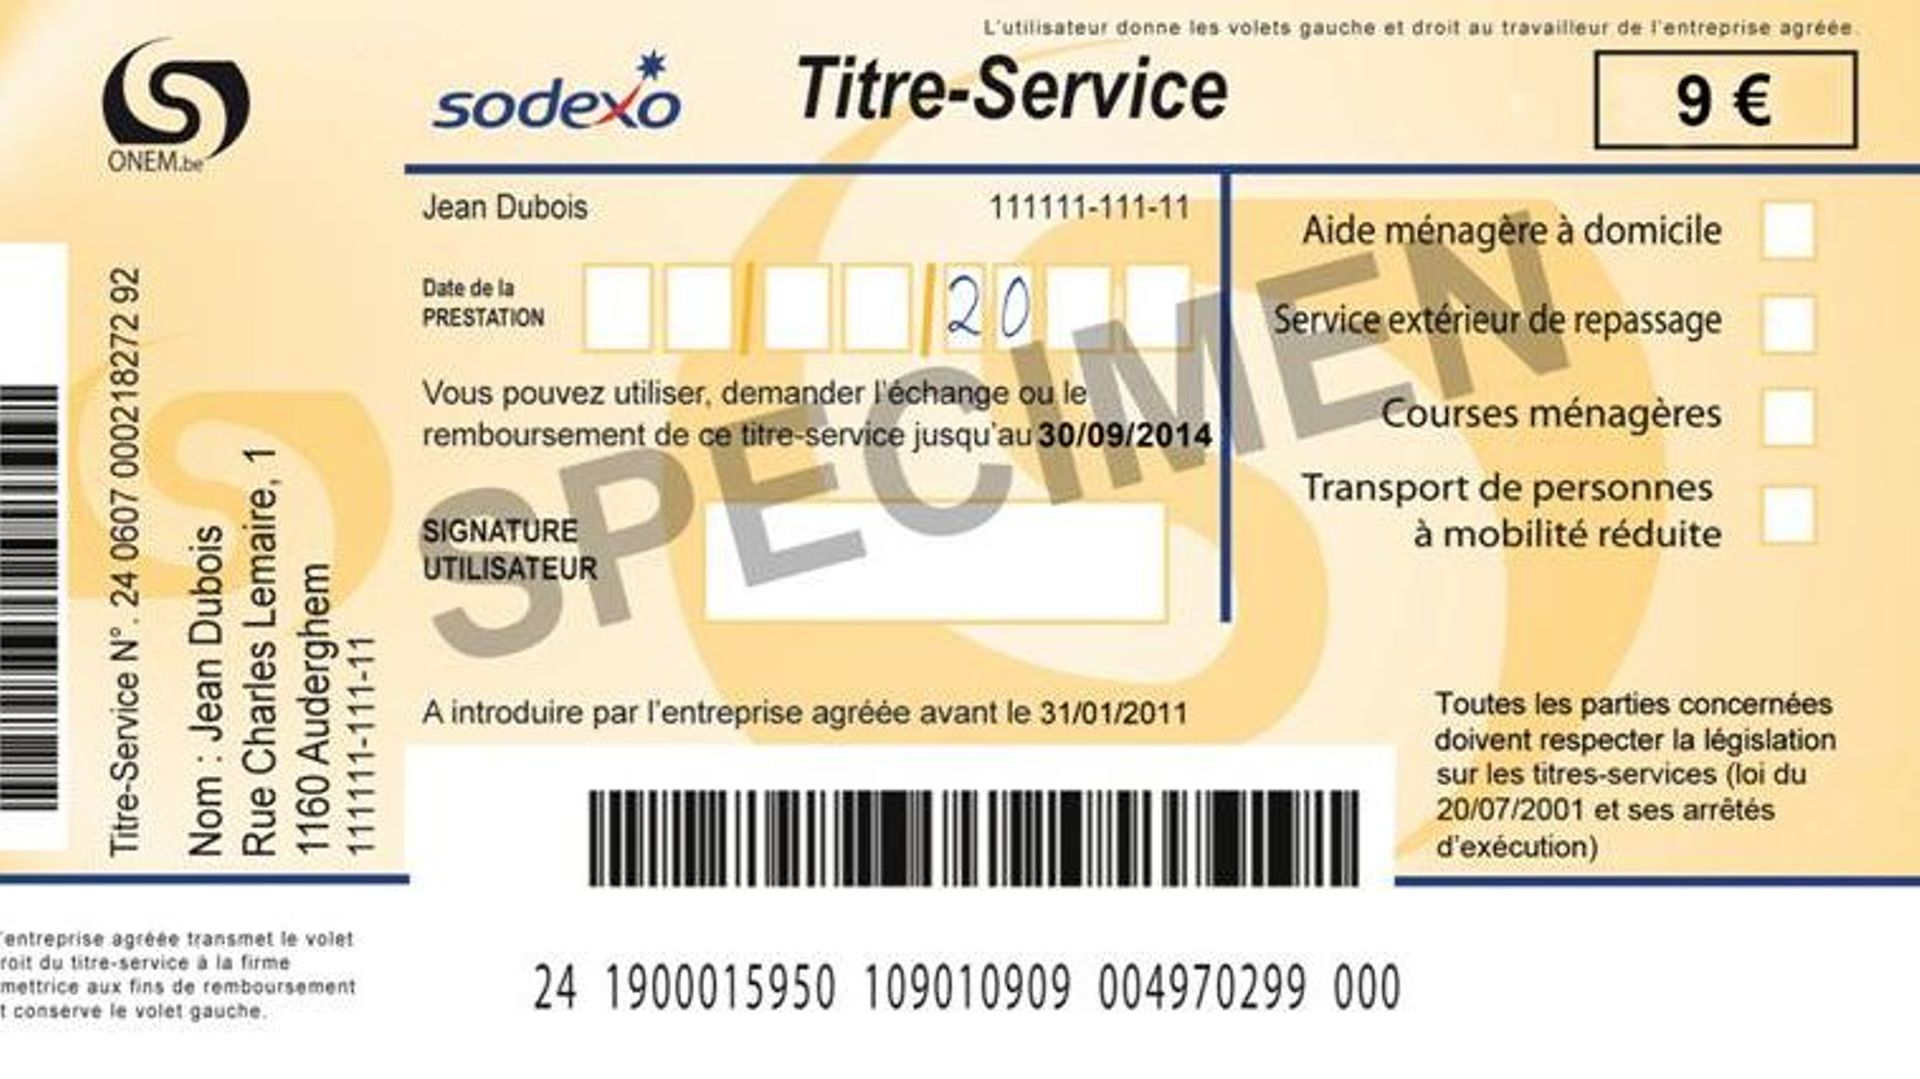 La Wallonie, tout comme Bruxelles et la Flandre, confient toujours à Sodexo la délivrance des titres services. 